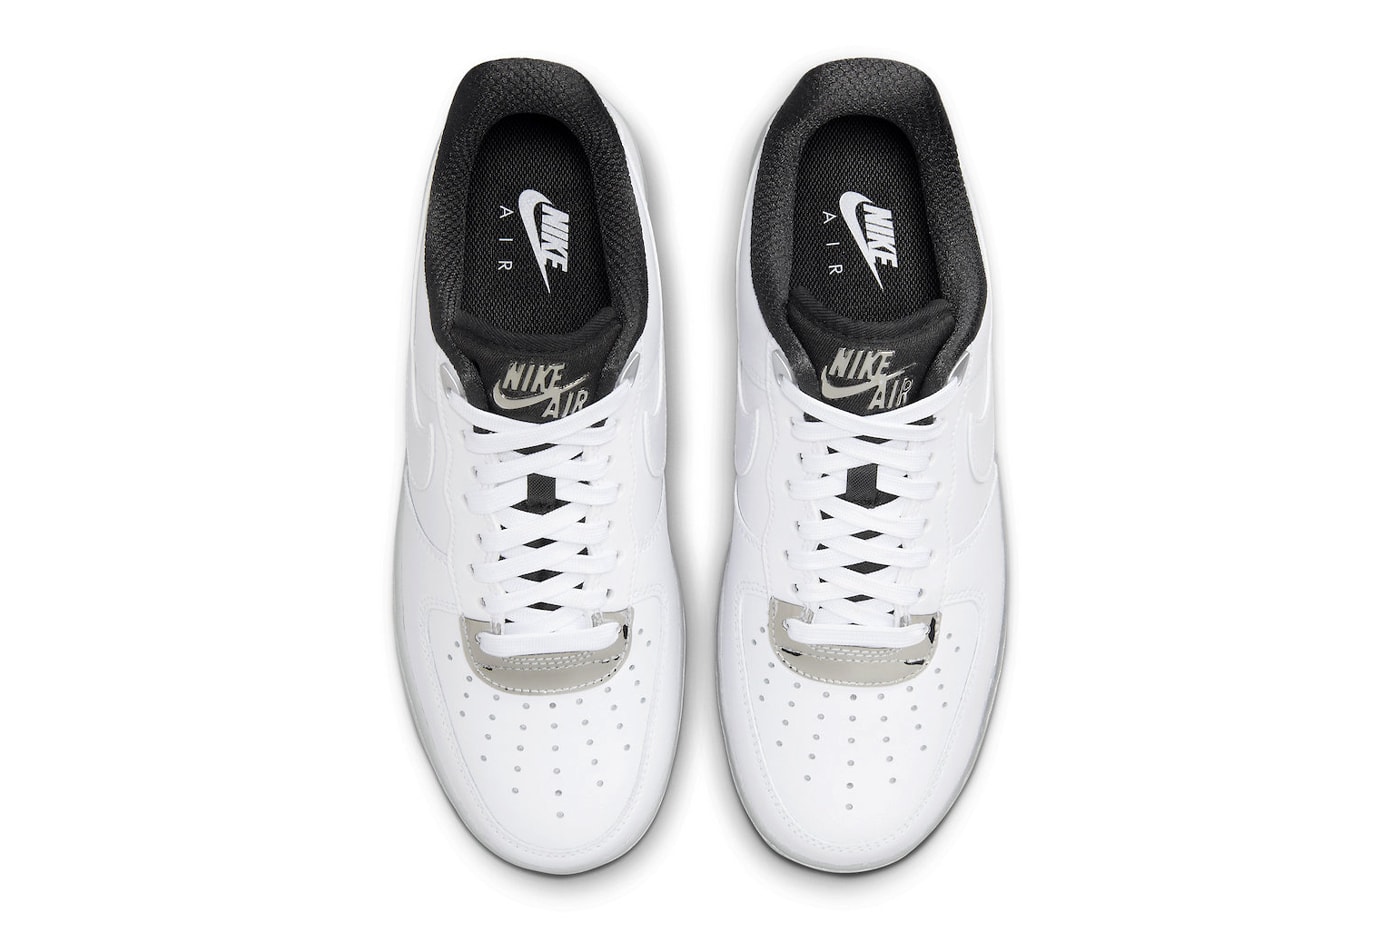 ナイキからクロムメッキのようなディテールをあしらった新作エアフォース1が登場 First Look at the Nike Air Force 1 Low "White Chrome" DX6764-100 WHITE/WHITE-METALLIC SILVER-BLACK af1 low tops staple sneakers swoosh basic white sneakers iterations